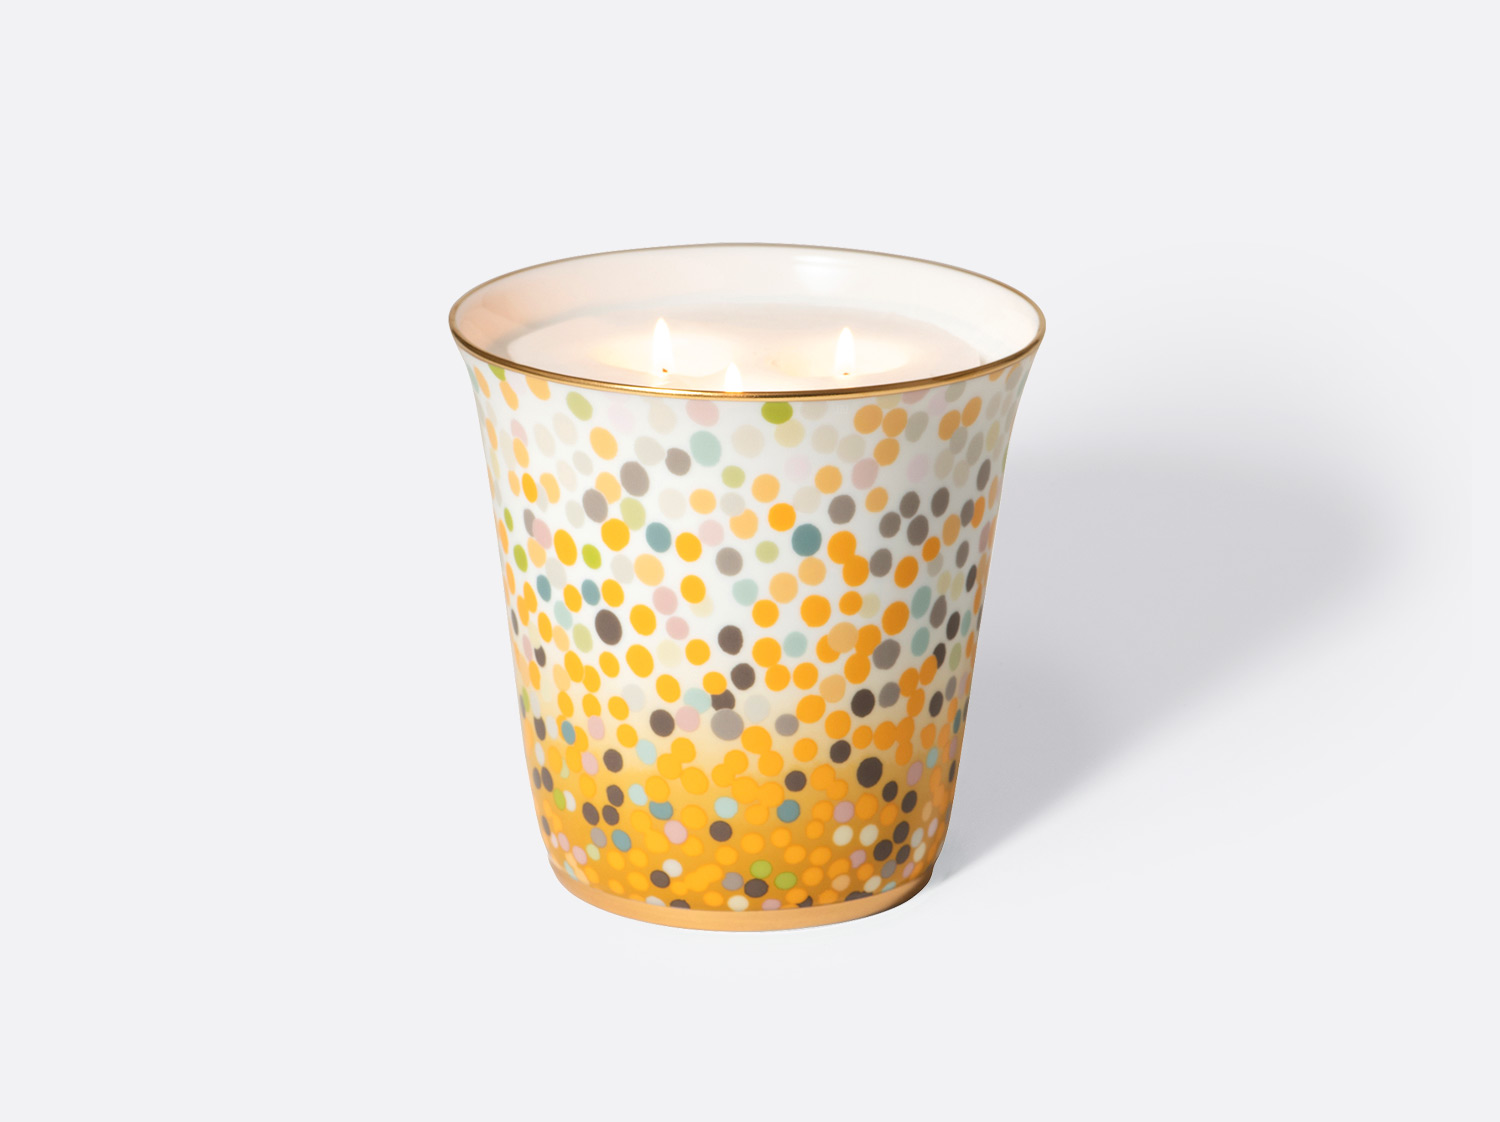 Pot à bougie 15 cm + bougie parfumée « Rue des Archives » 950g en porcelaine de la collection Gala Soleil Bernardaud